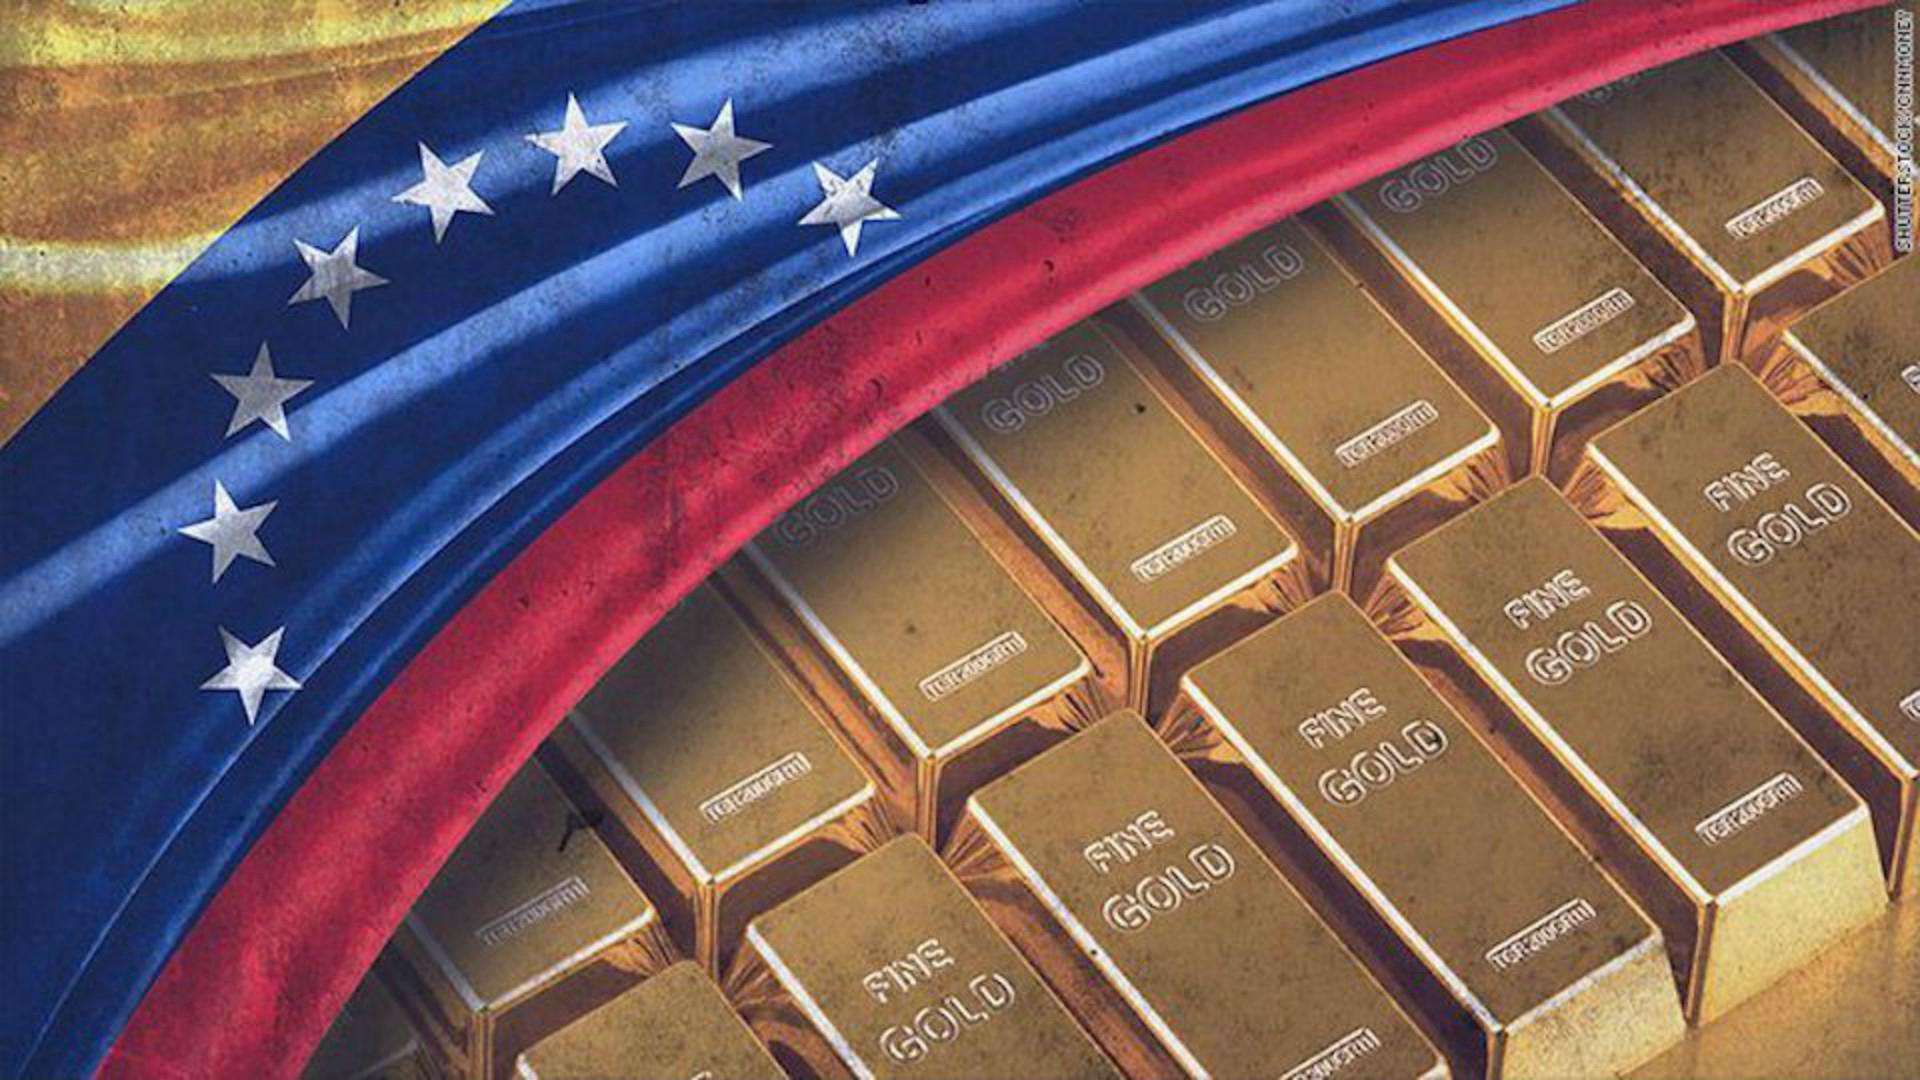 英国拒绝委内瑞拉取回黄金!中国在美国还存有600吨,要拿回来么